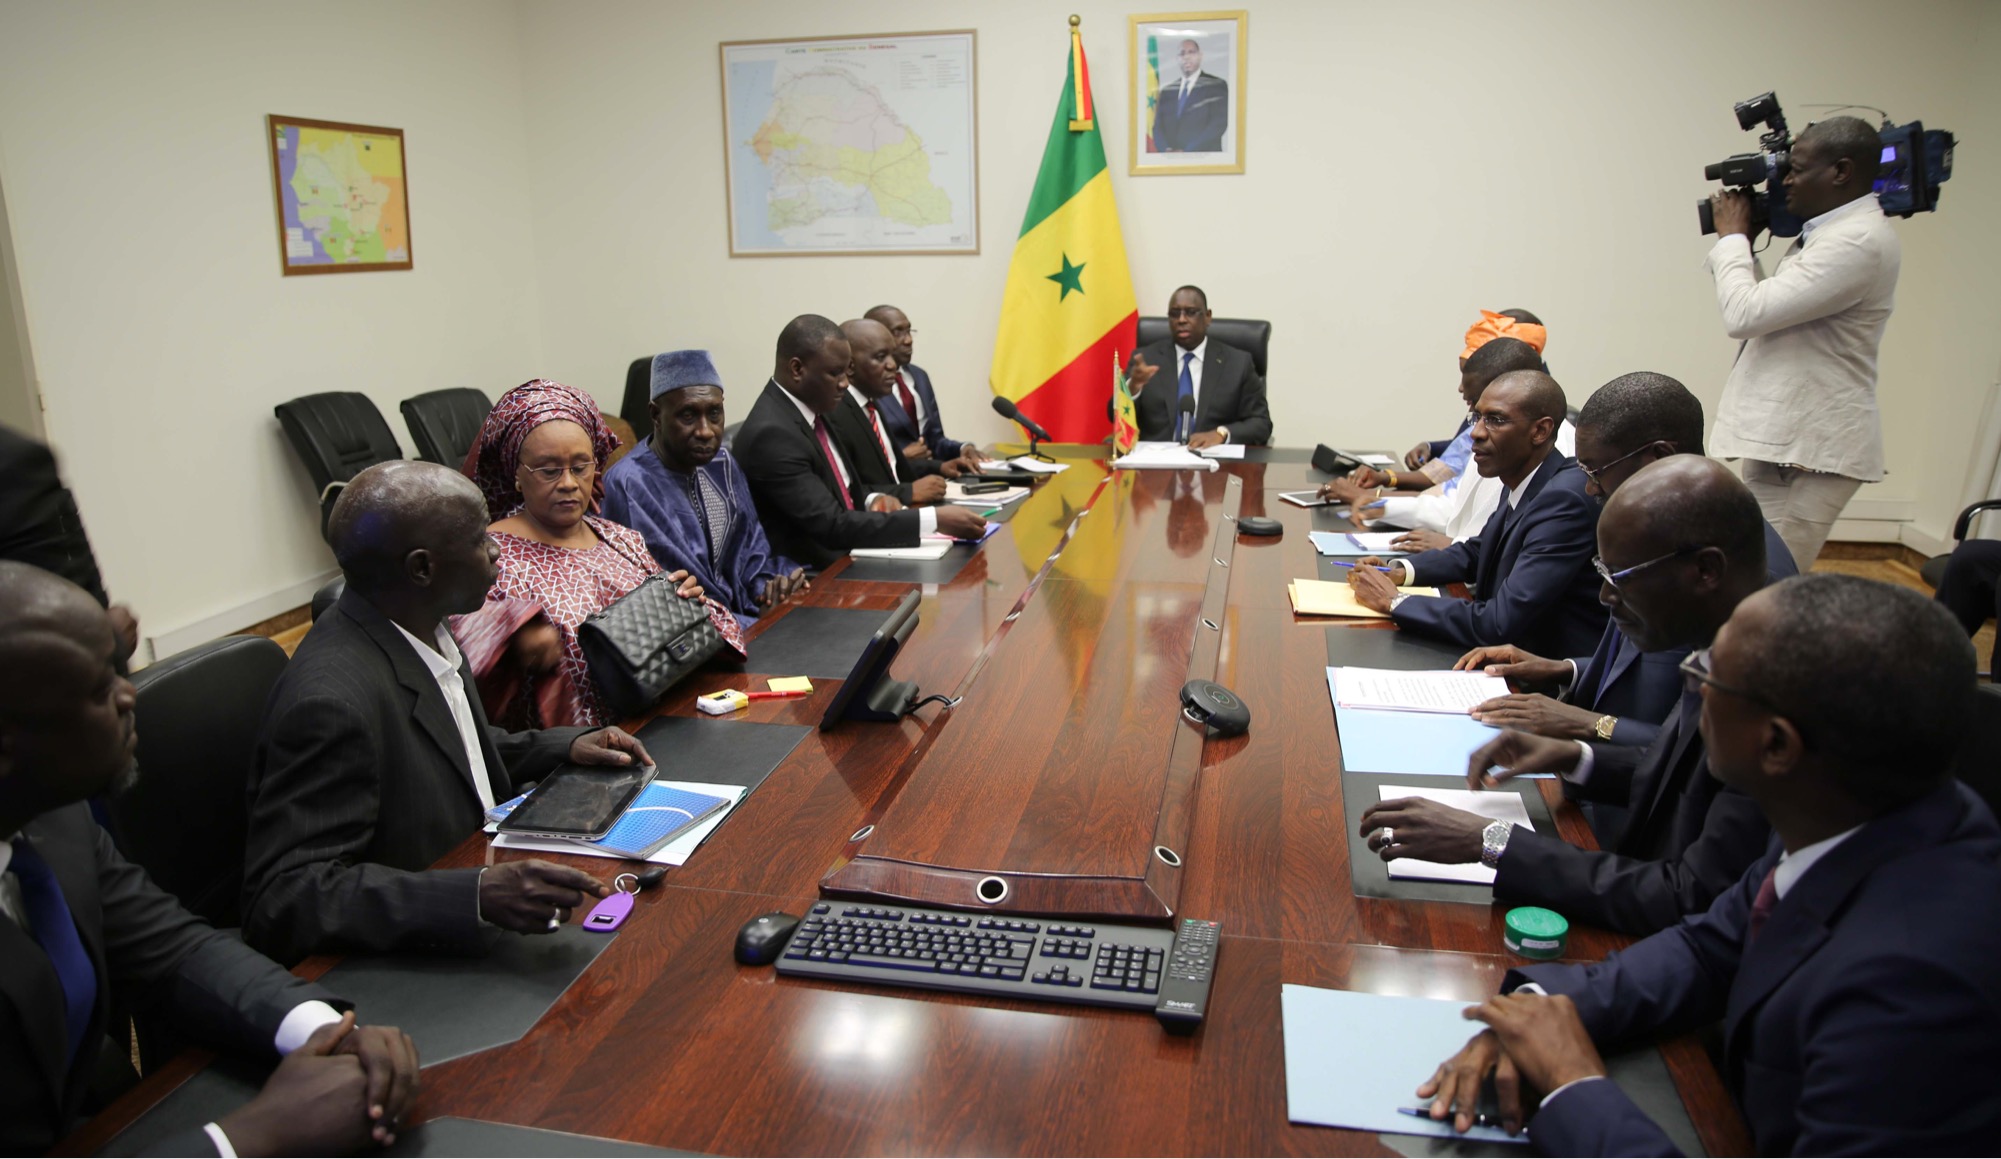 "Gloire au pays où l'on parle" : Le Sénégal en est-il une exception ?